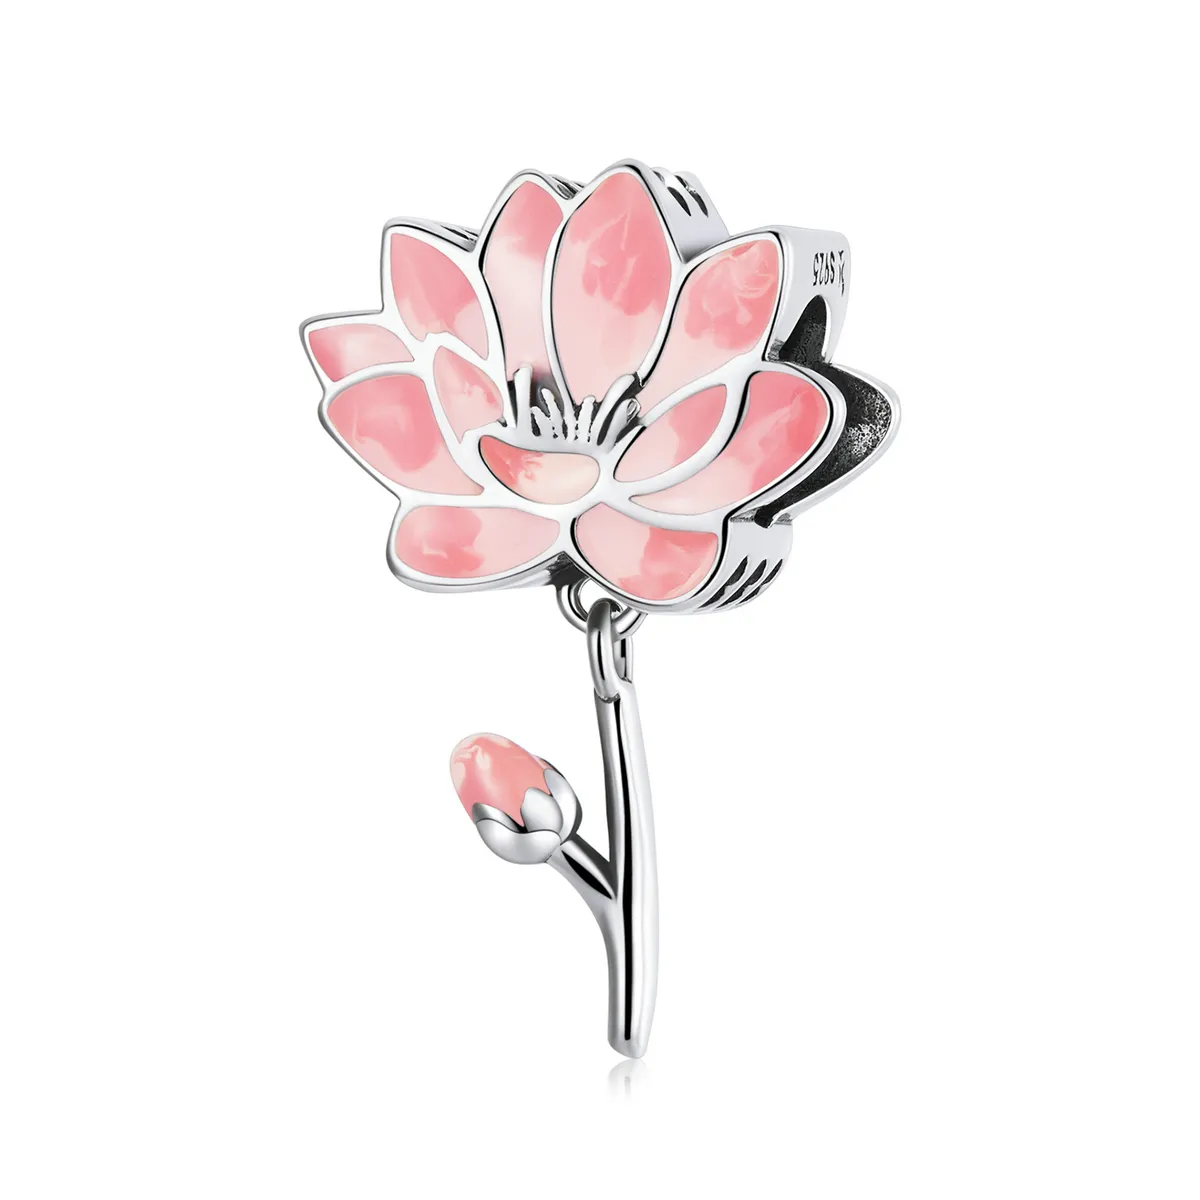 Charma în stil Pandora cu floare de lotus proaspătă - SCC2157